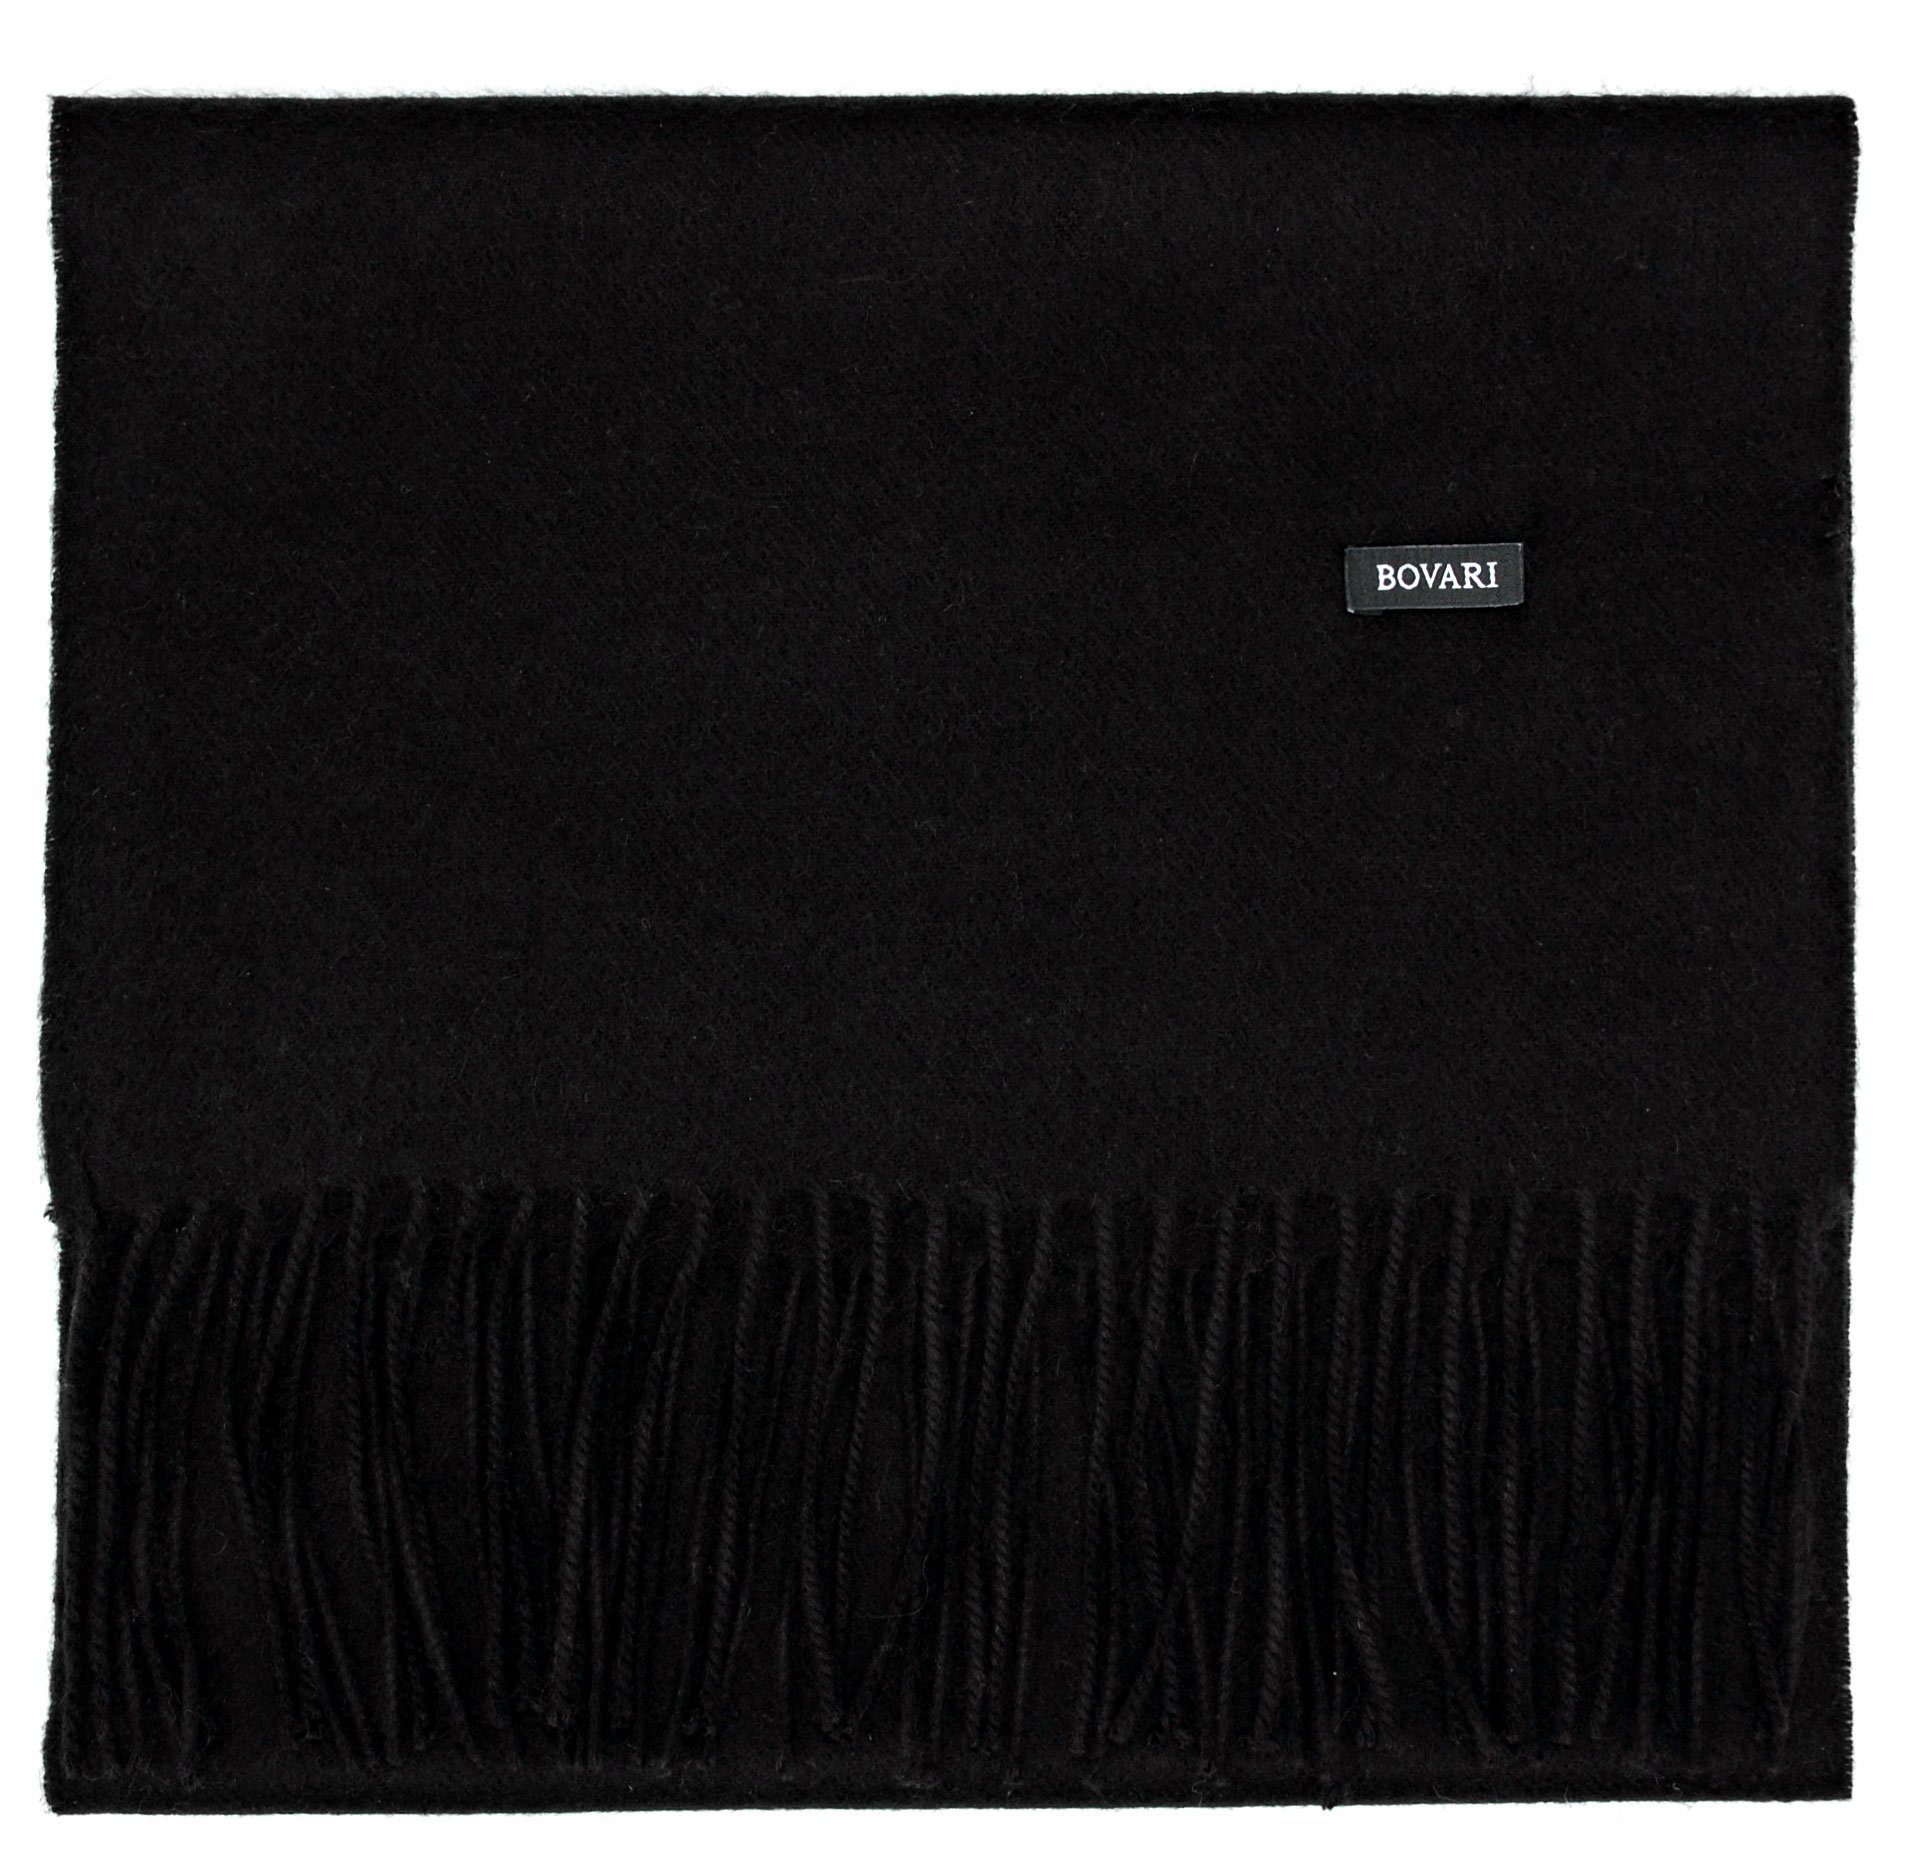 Schal schwarz 180 black Kaschmir/Cashmere / 31 100% Kaschmir Qualität, x – Kaschmirschal cm Damen Bovari Premium –